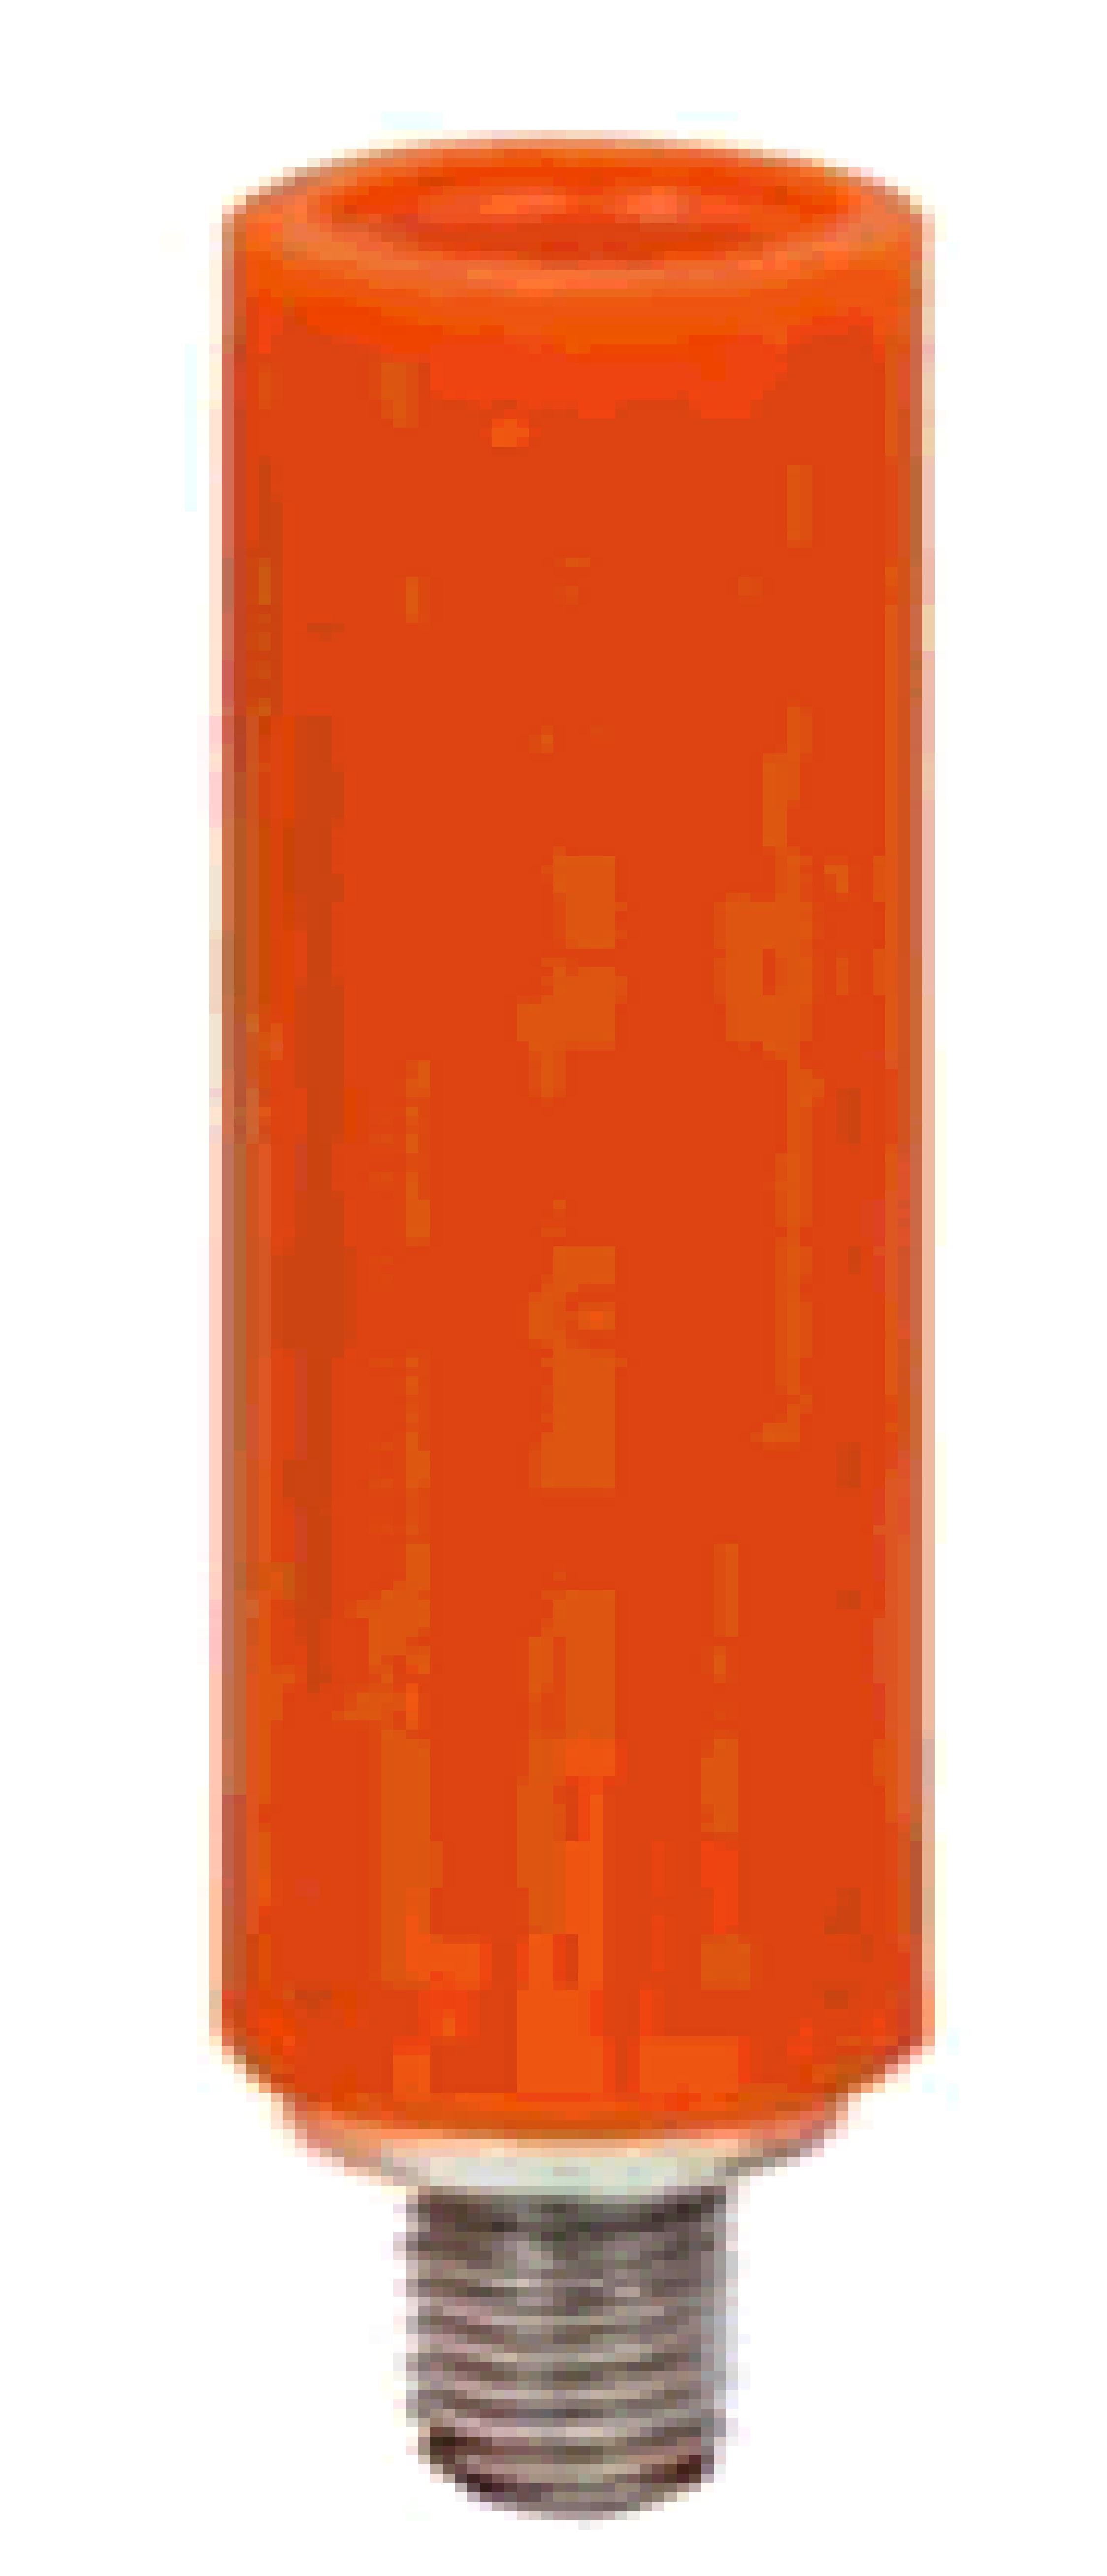 Тестовый штекер для измерительных клемм серии MRK-6, оранжевый                                                                                                                                                                                                 